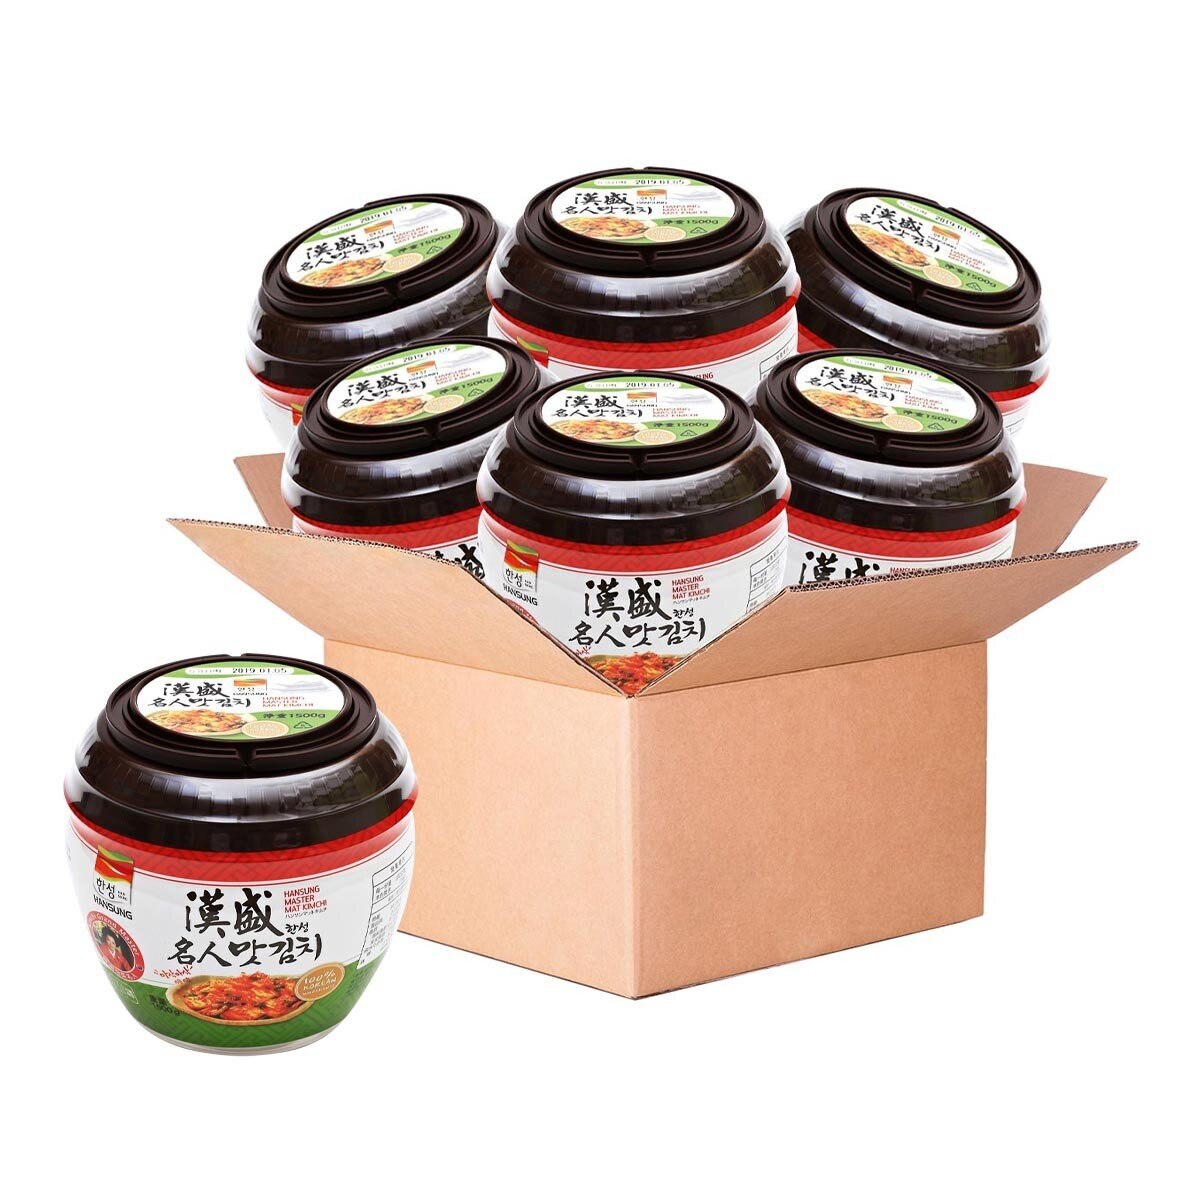 漢盛 泡菜切片罐裝 1.5公斤 X 6罐 僅配送至高雄市部分區域